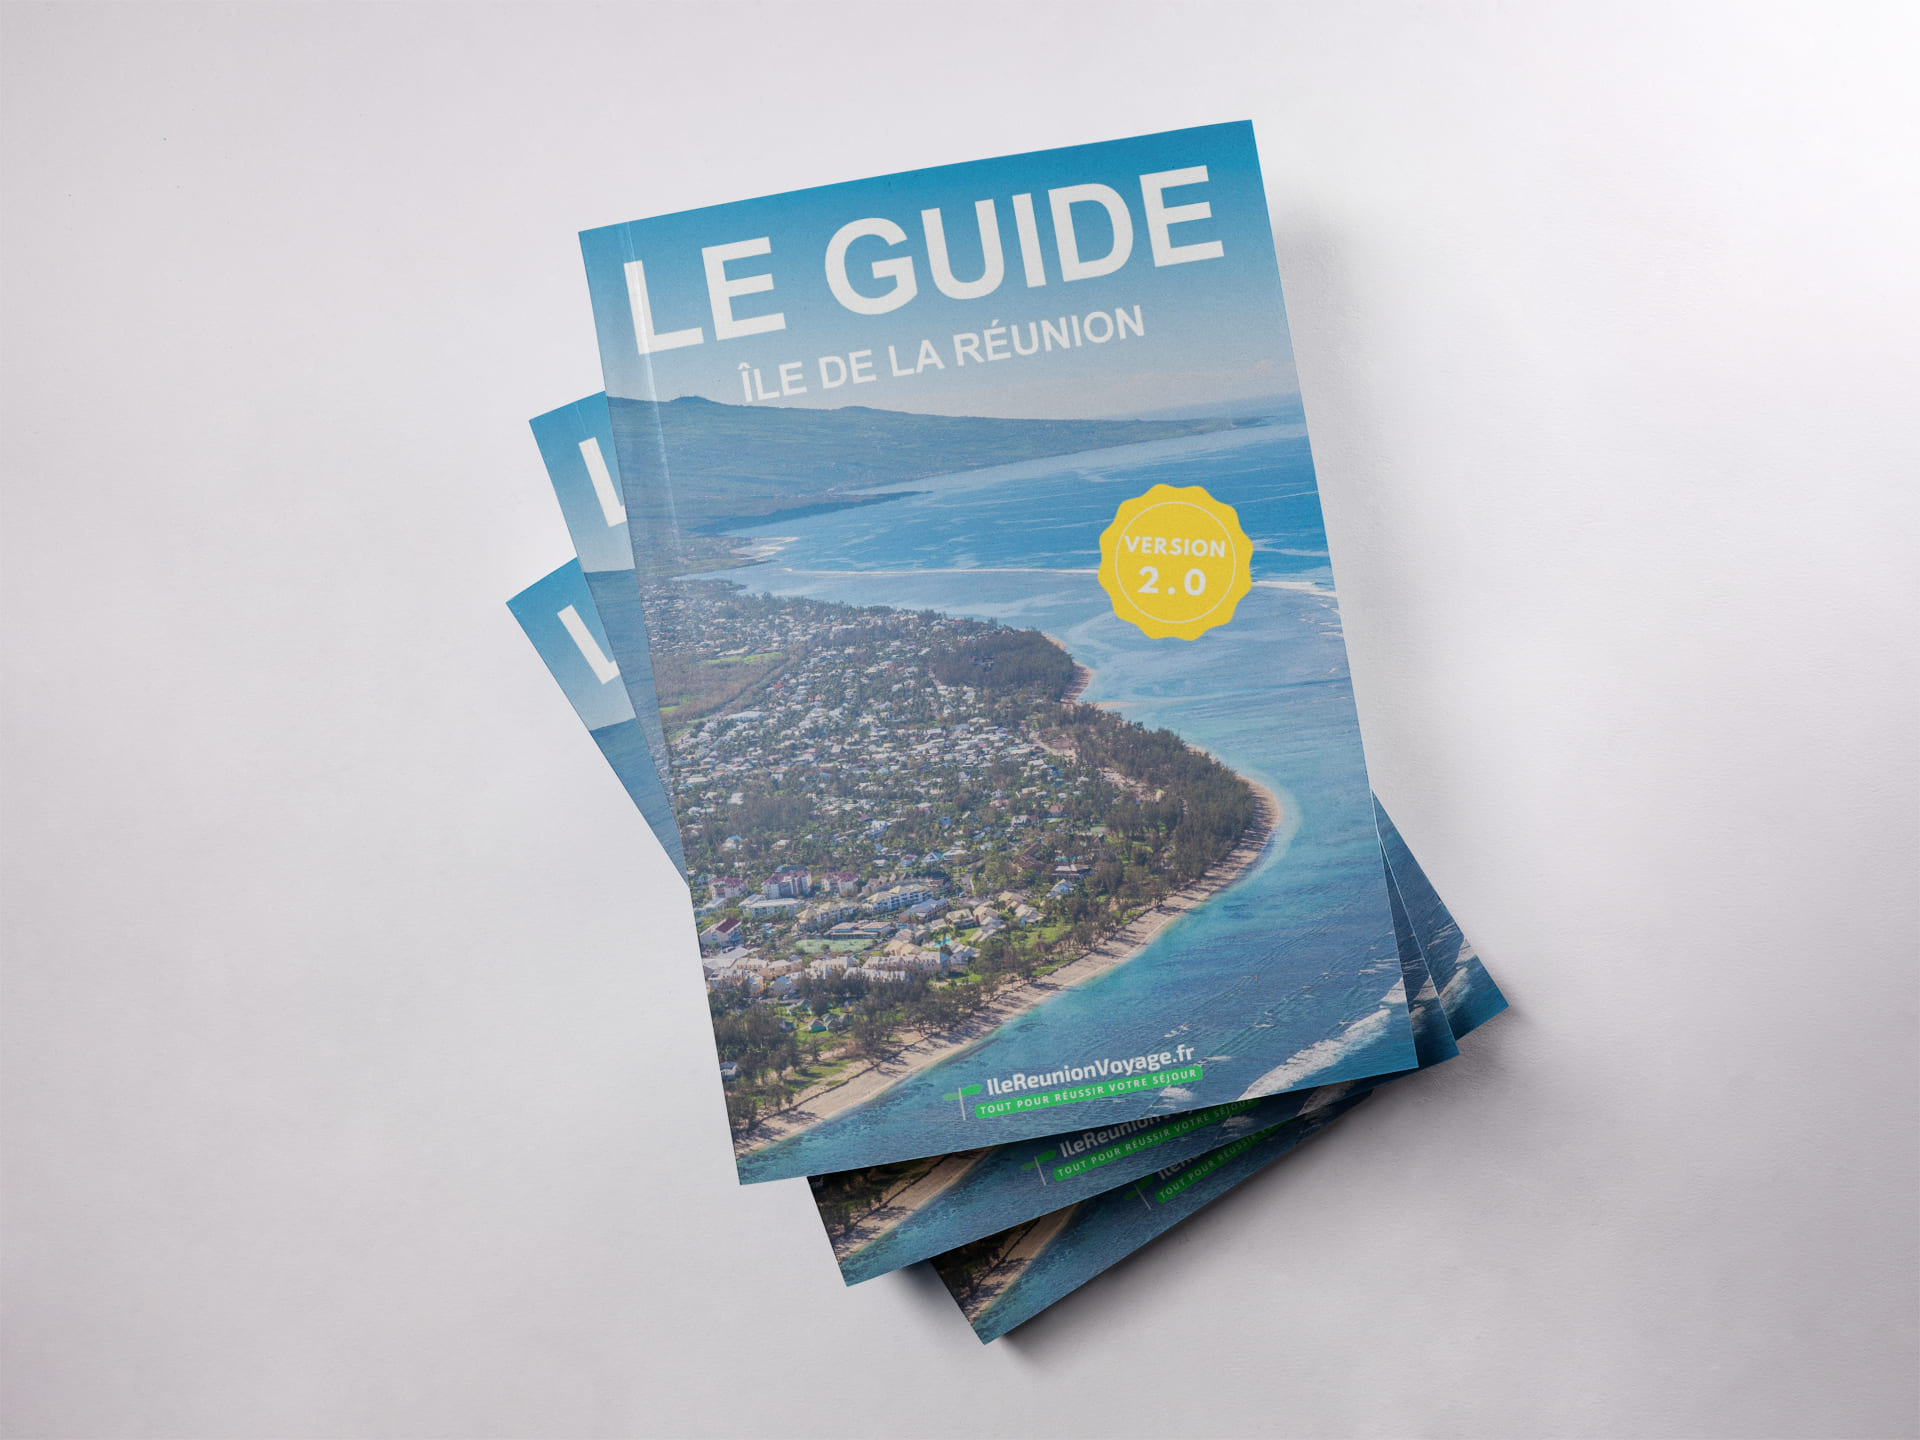 Le guide de voyage de l'île de la Réunion - Keylodge x IleReunionVoyage.fr